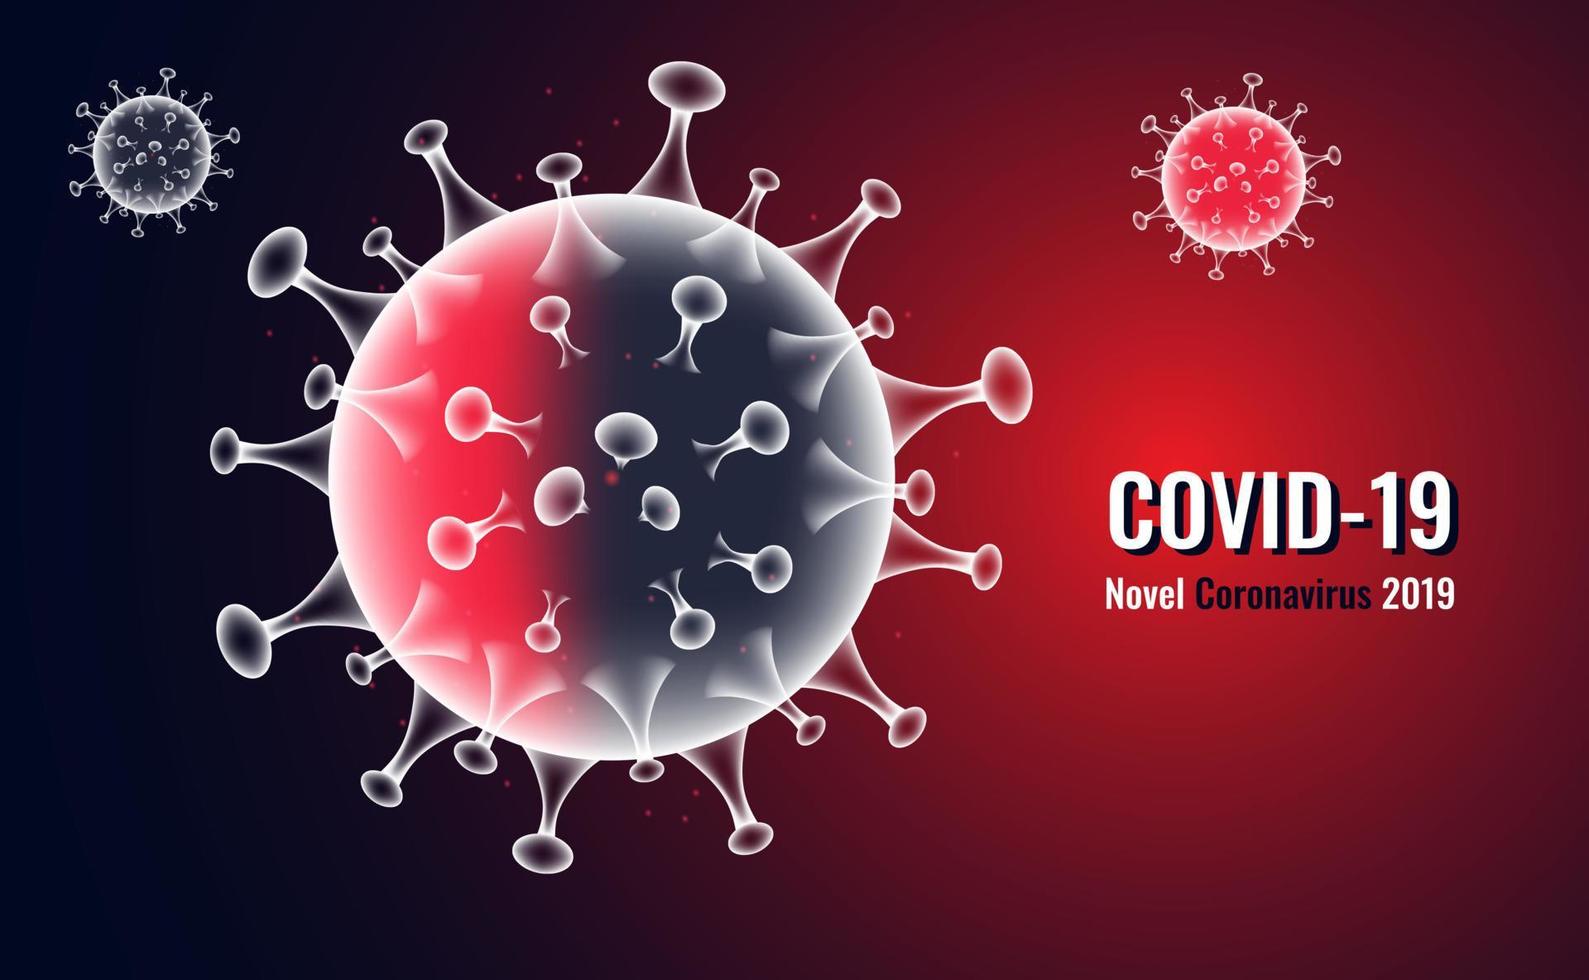 abstrakt mesh virusinfektion covid-19, coronavirus, sars sjukdom, sars-cov-2 sjukdom på bakgrund vektor